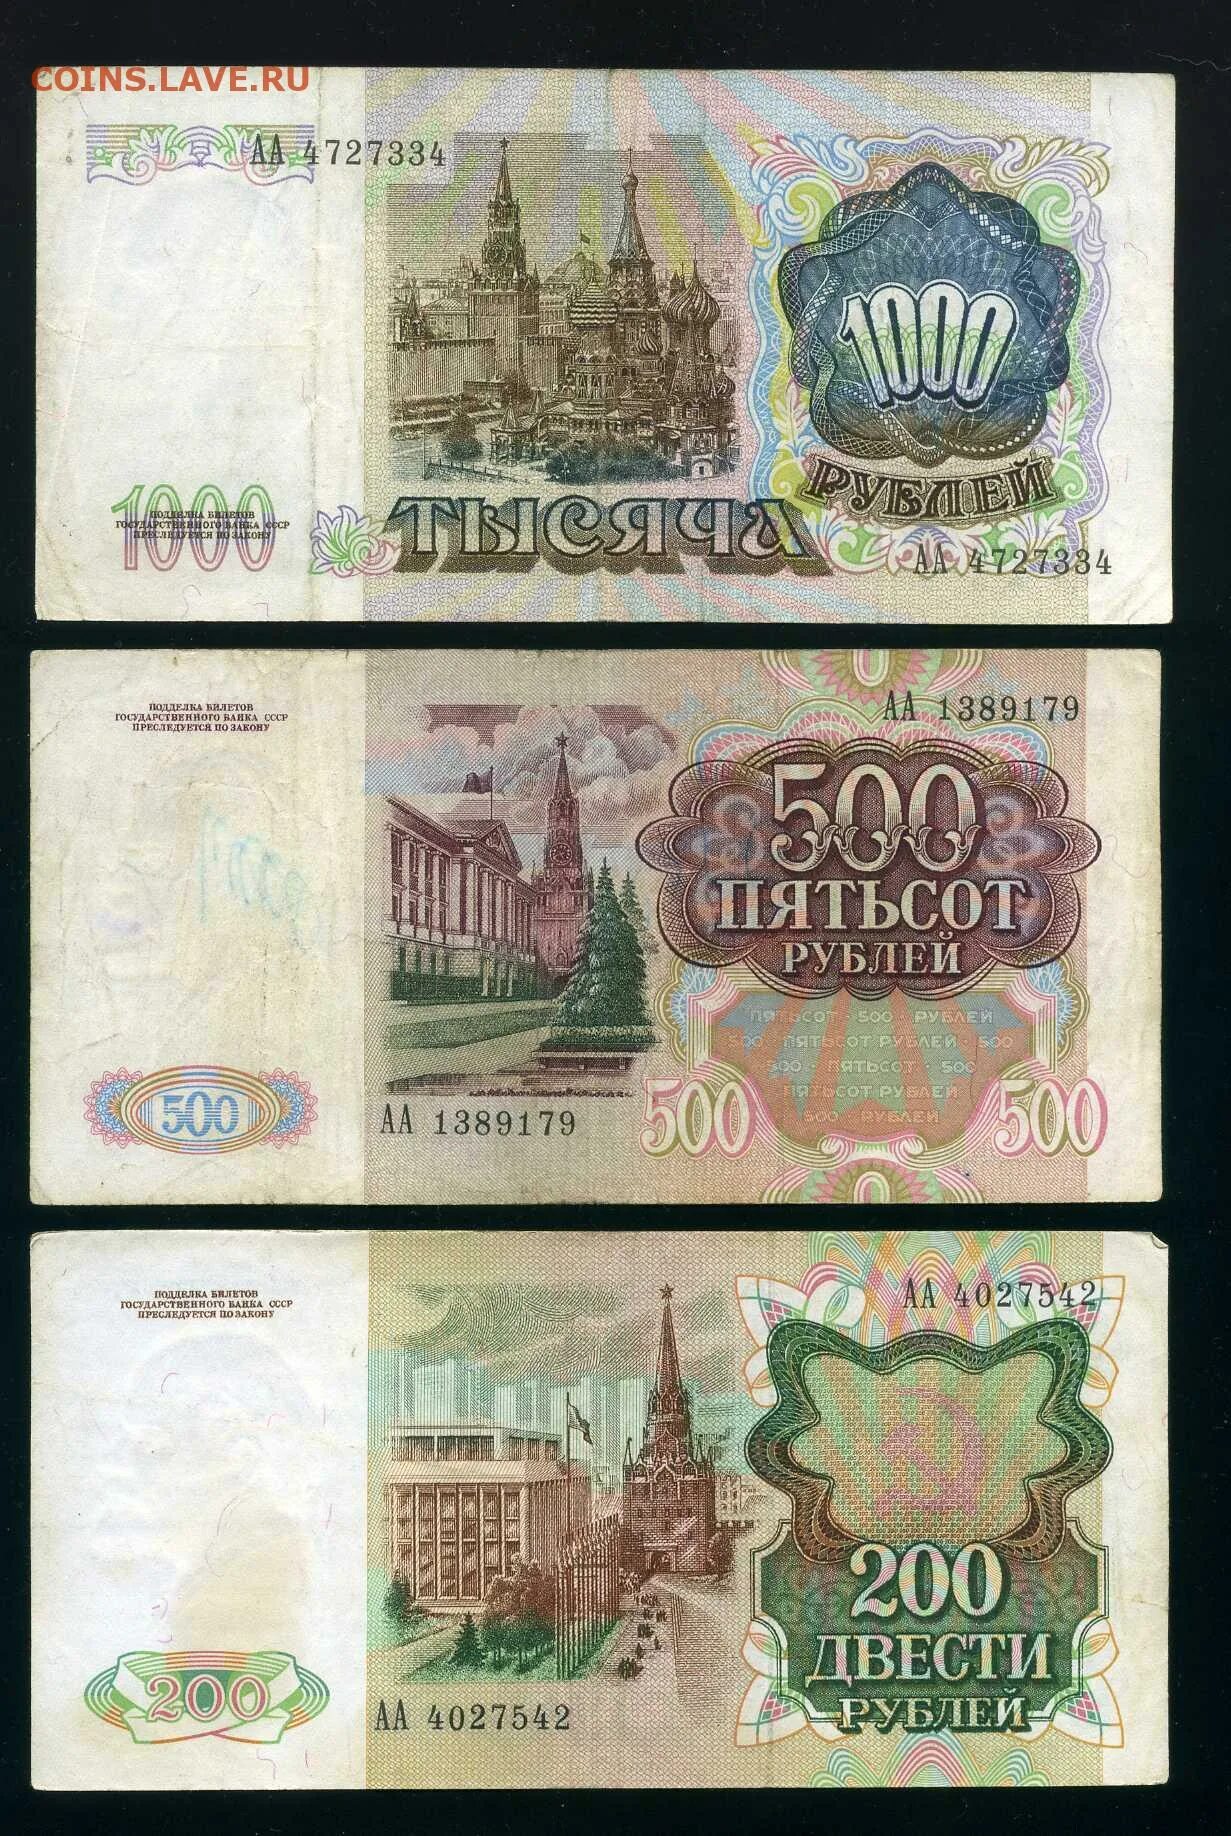 1000 рублей 1991. 1000 Рублей 1991г. 200 Руб 1991. 200 Рублей 1991 года. 200 Рублей 1991 бумажные.